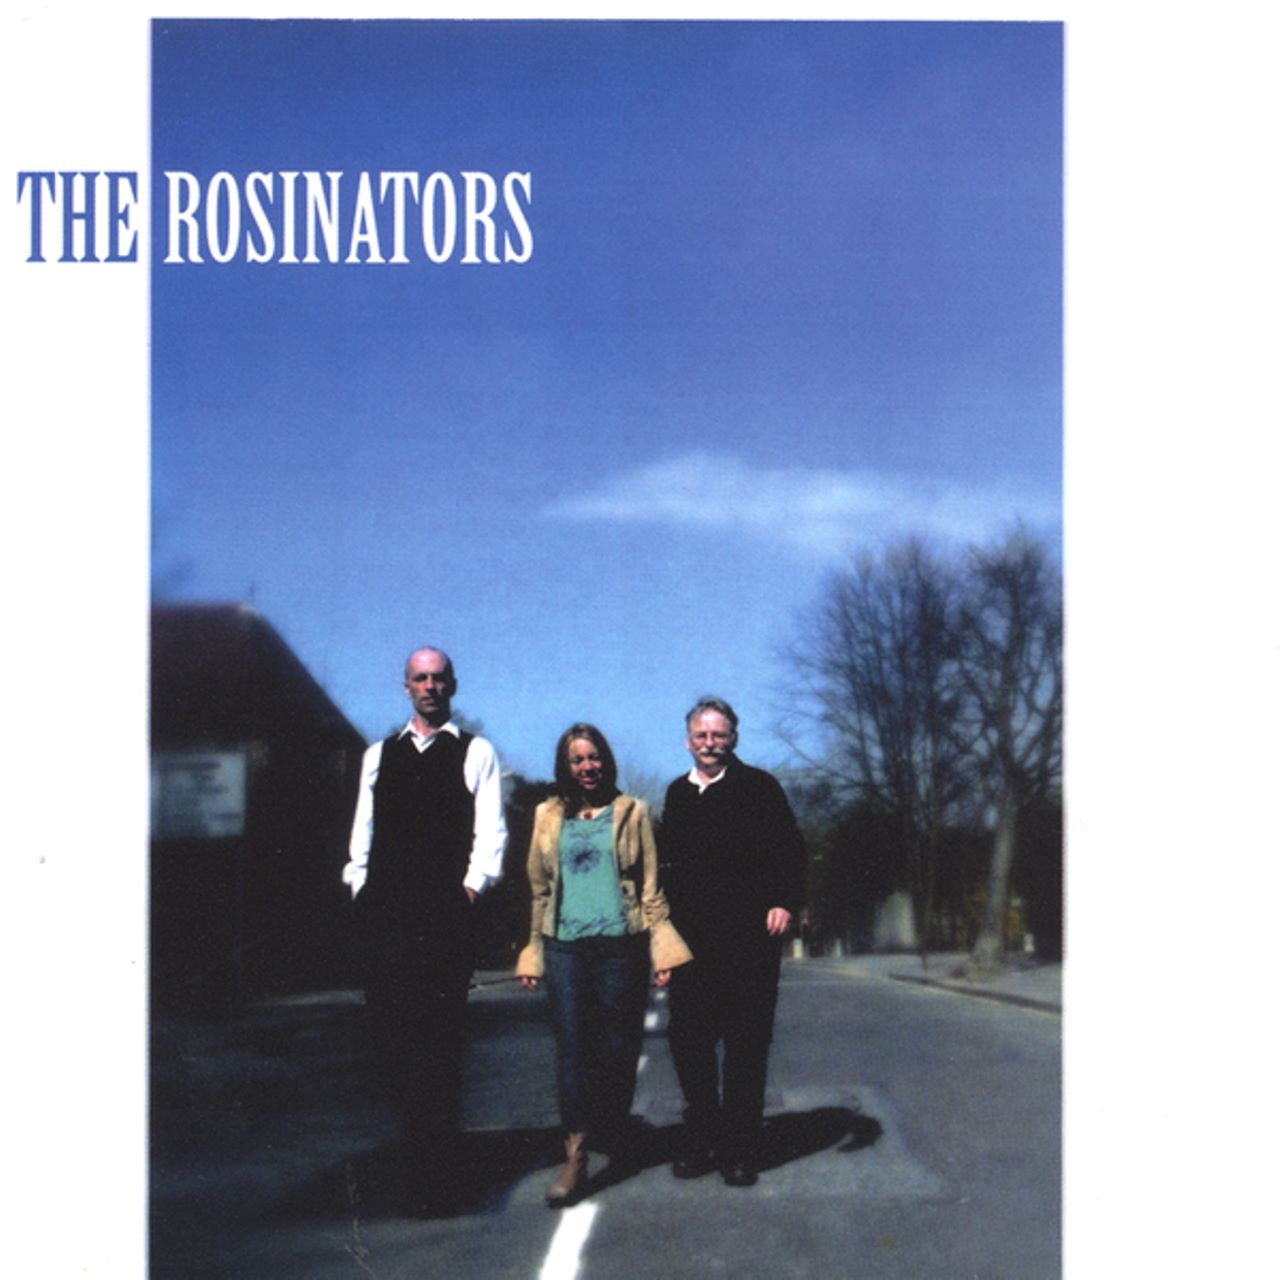 Rosinators - The Rosinators cover album